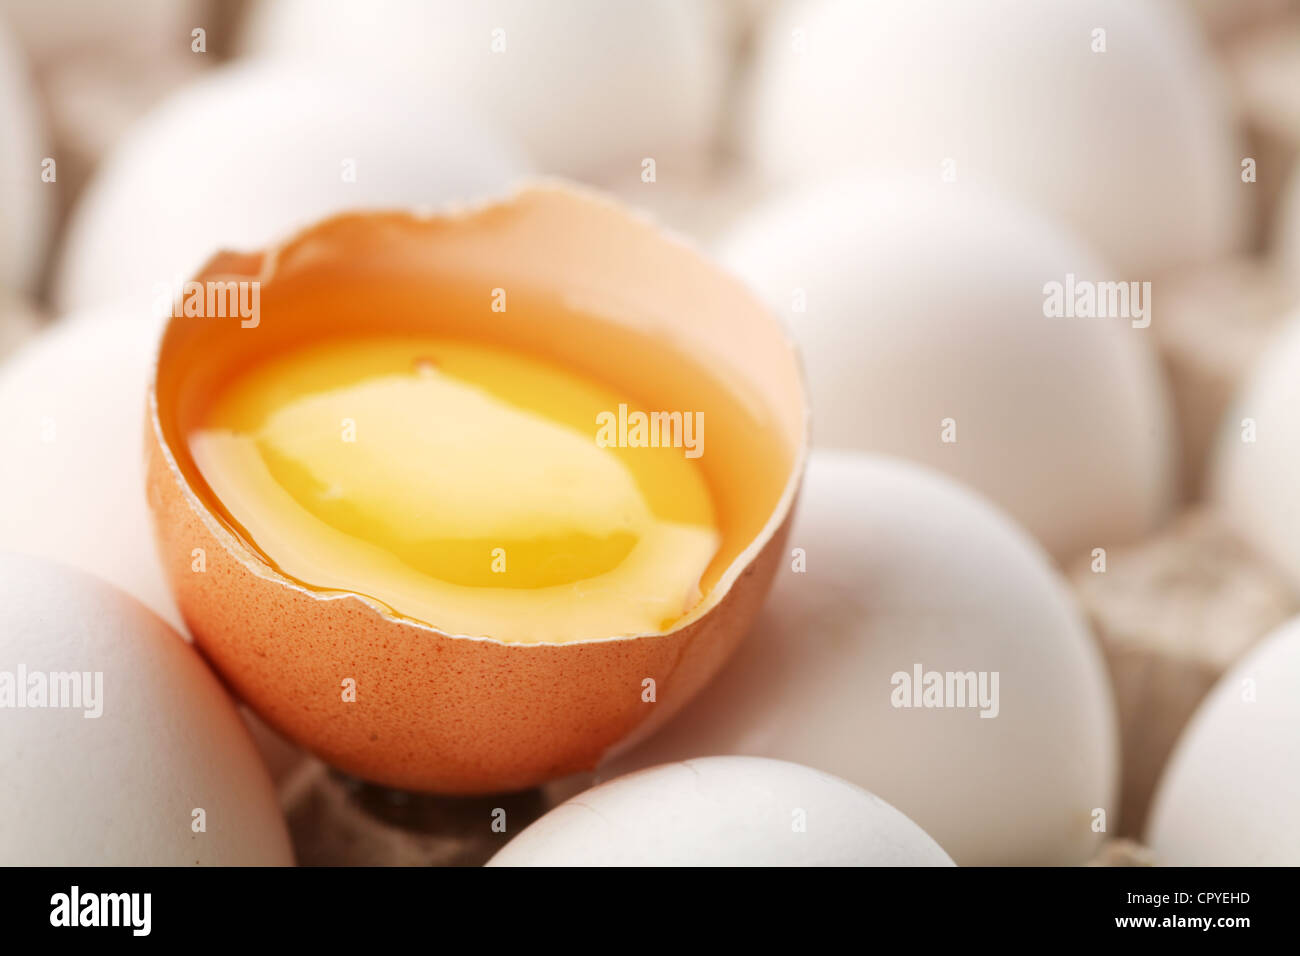 Los huevos de gallina. Un huevo está roto. Foto de stock